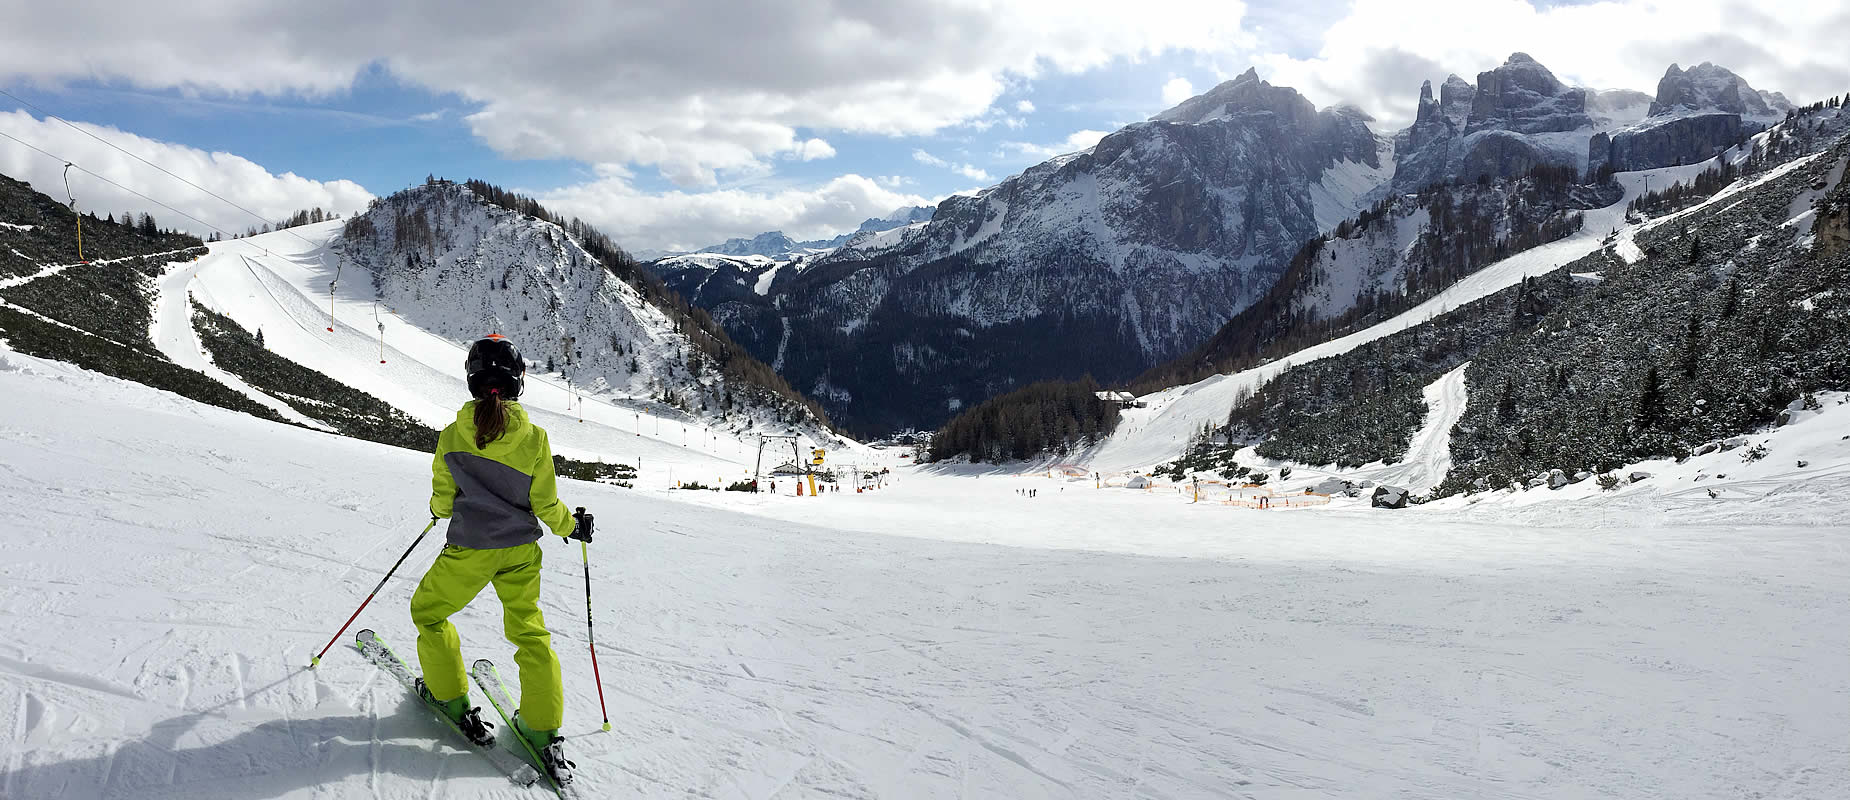 Ski slopes Dolomiti Superski